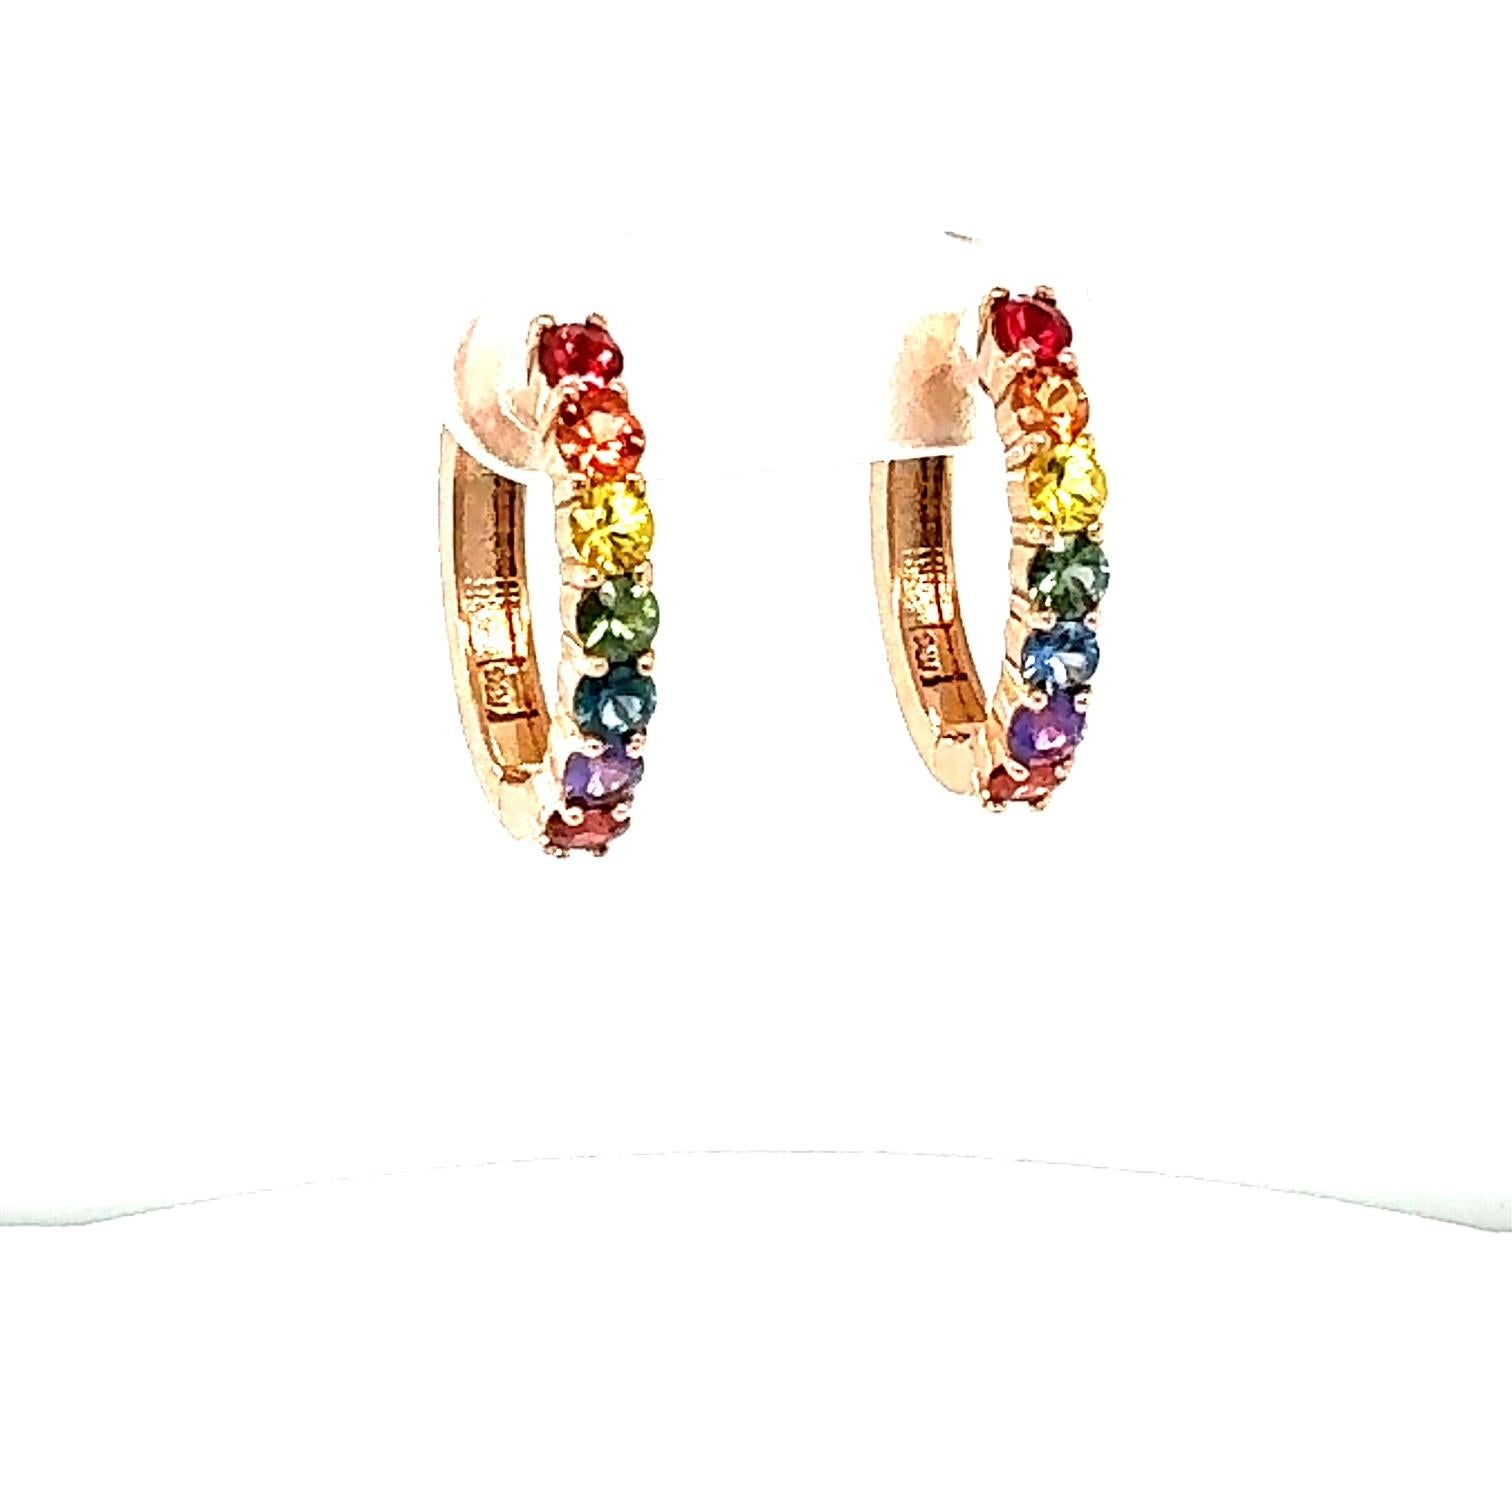 1,99 Karat Regenbogensaphir-Rosegold-Ohrringe
Schöne alltägliche Huggy-Ohrringe 

Angaben zum Artikel:

14 mehrfarbige Natursaphire im Rundschliff mit einem Gewicht von 1,99 Karat
Gesamtkaratgewicht ist 1,99 Karat
Gefertigt aus 14K Rose Gold ca. 4,3